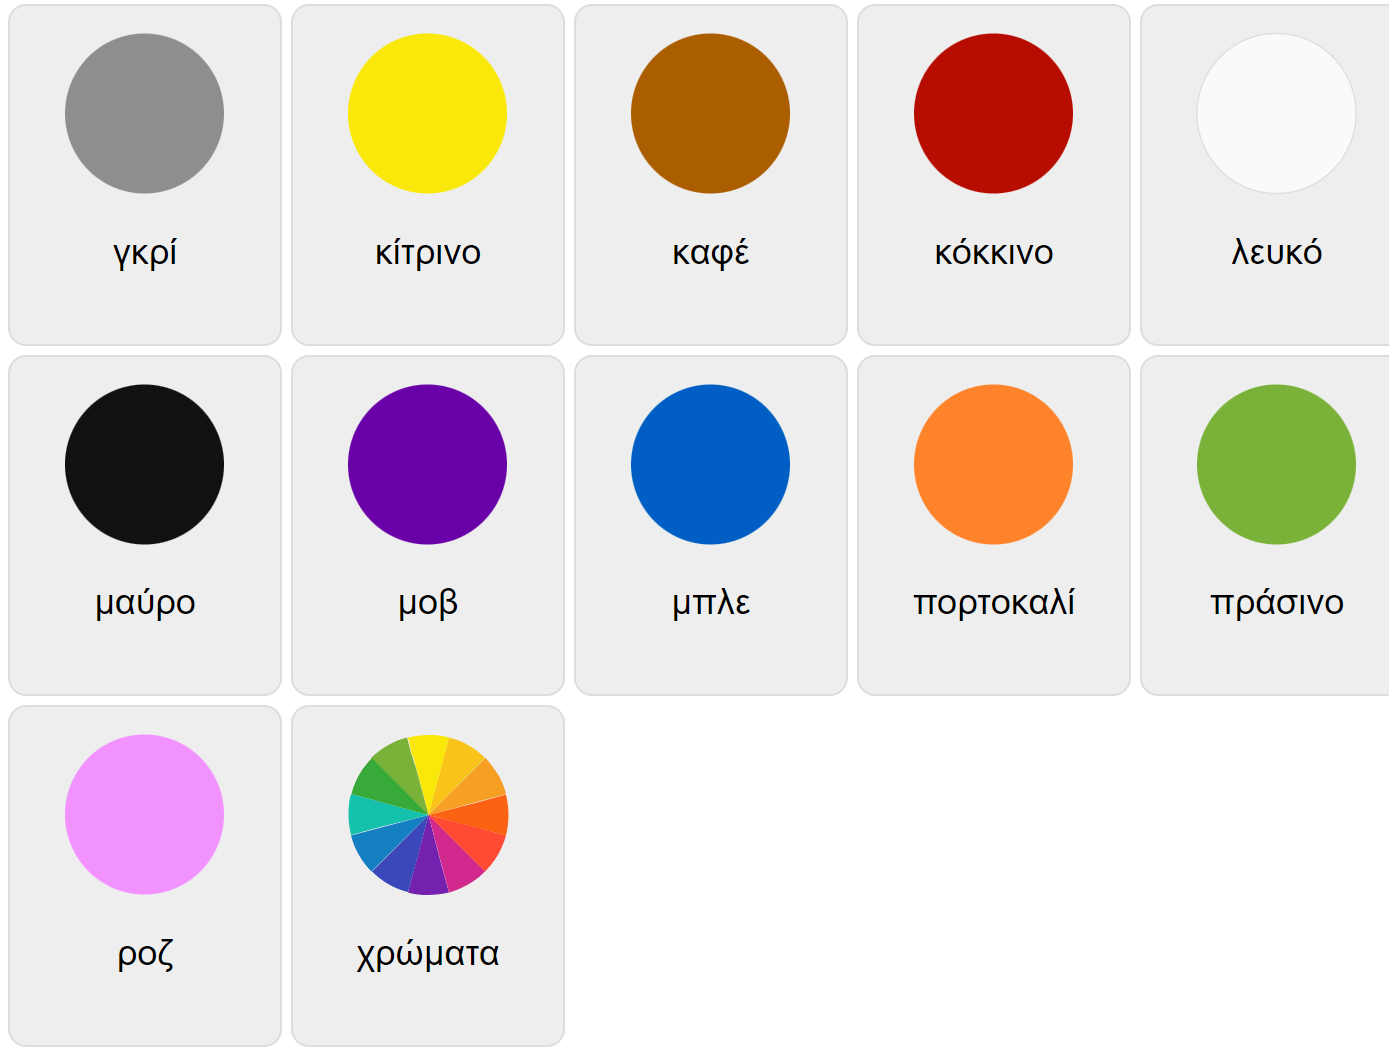 Colores en griego